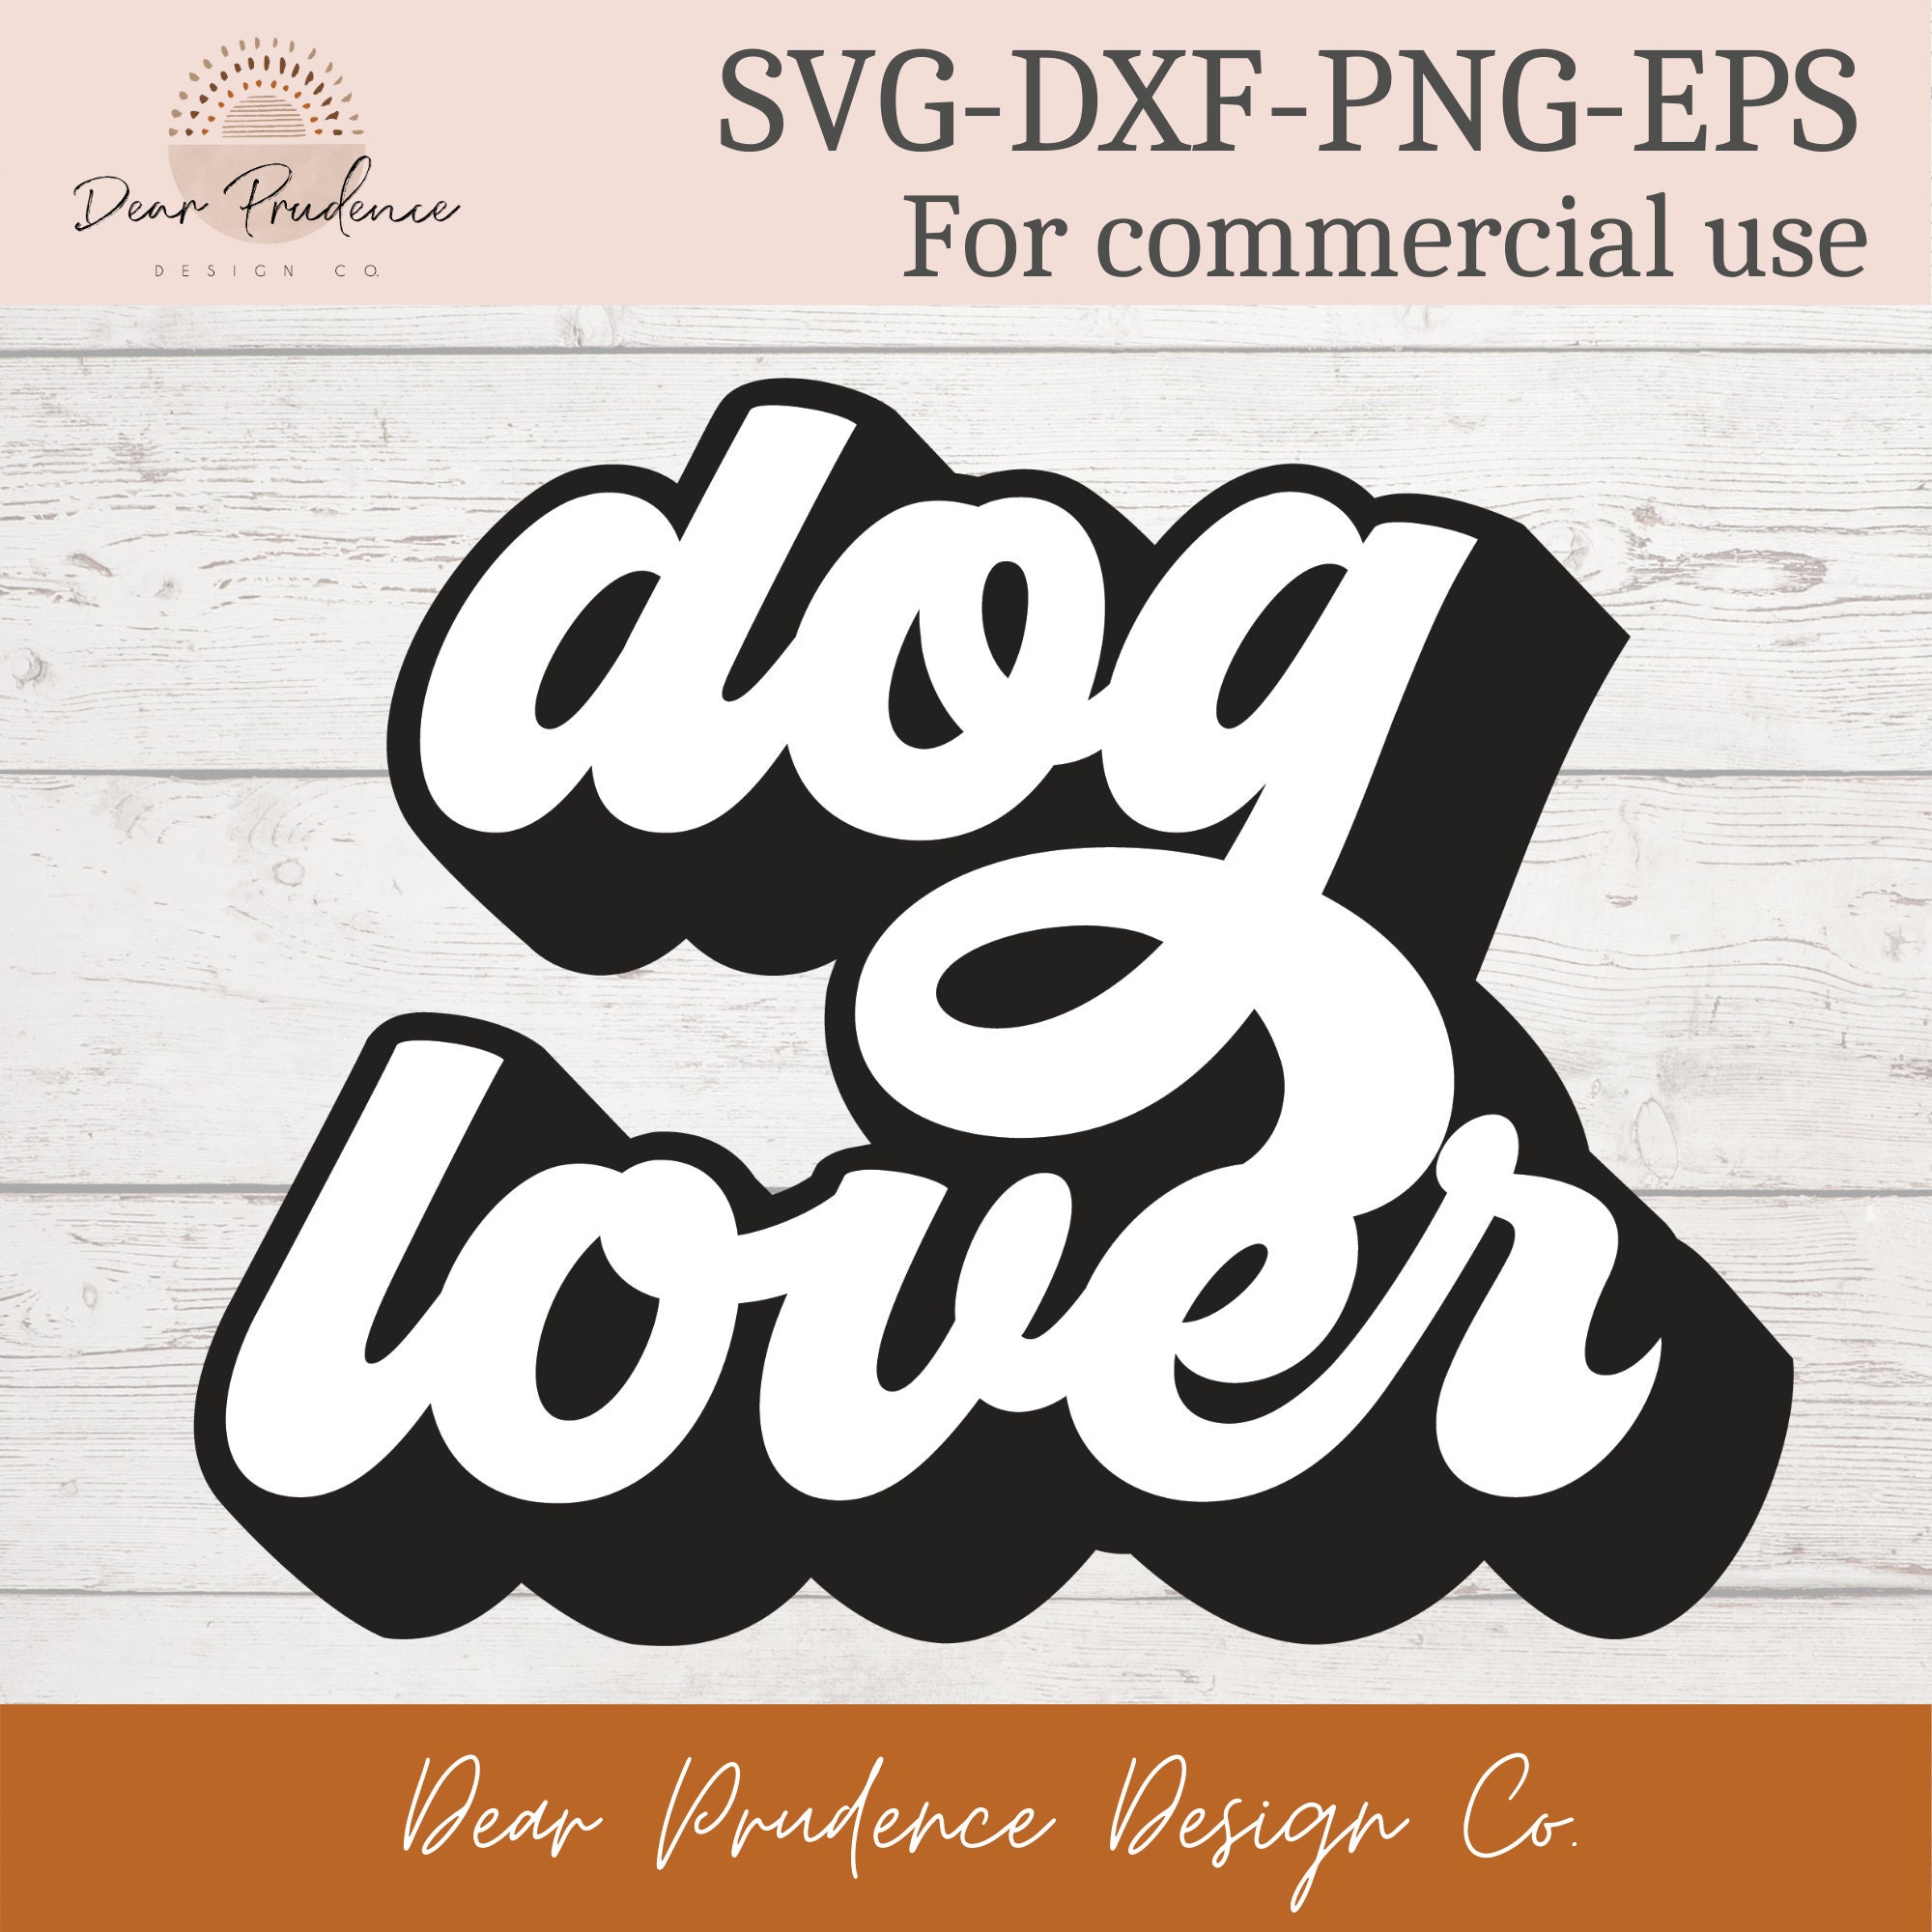 Dog lover SVG dog lover png dog lover eps dog lover dxf | Etsy